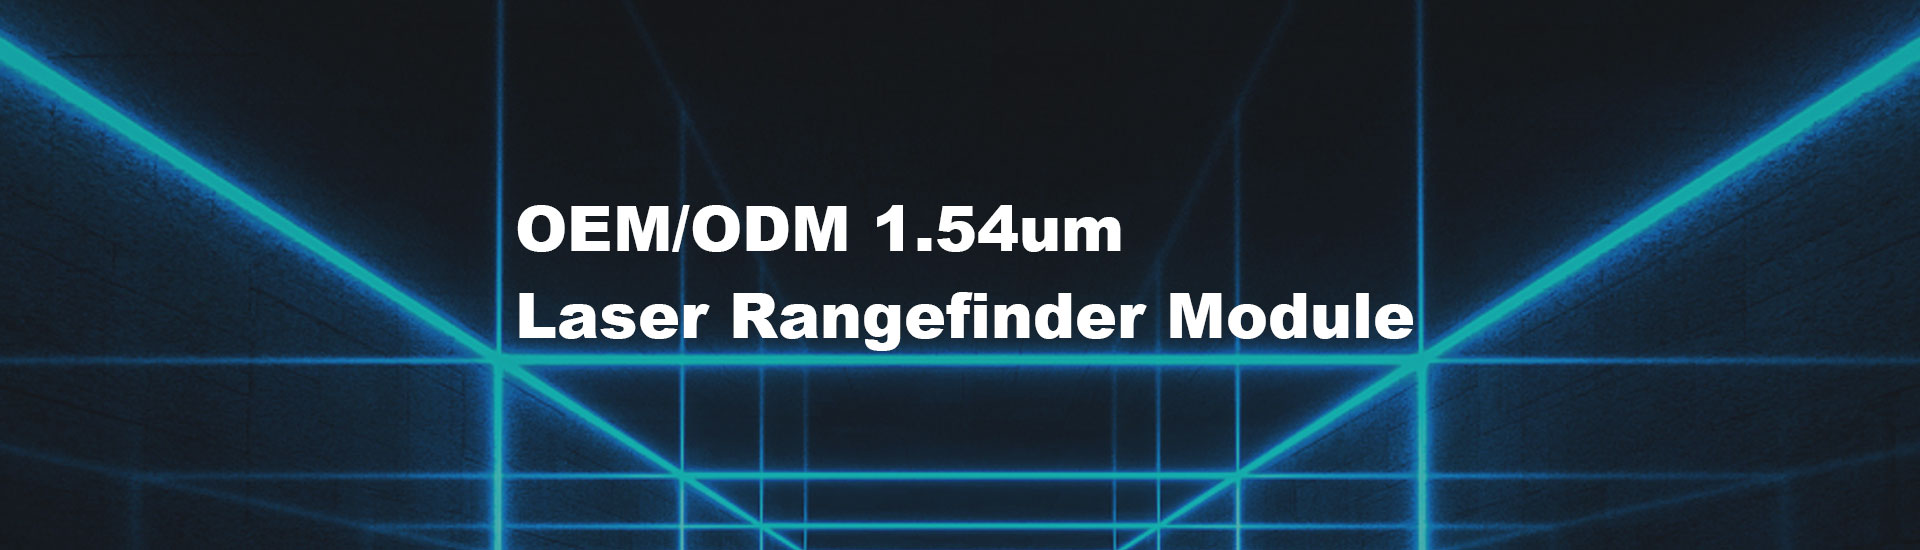 18km Laser Rangefinder Module